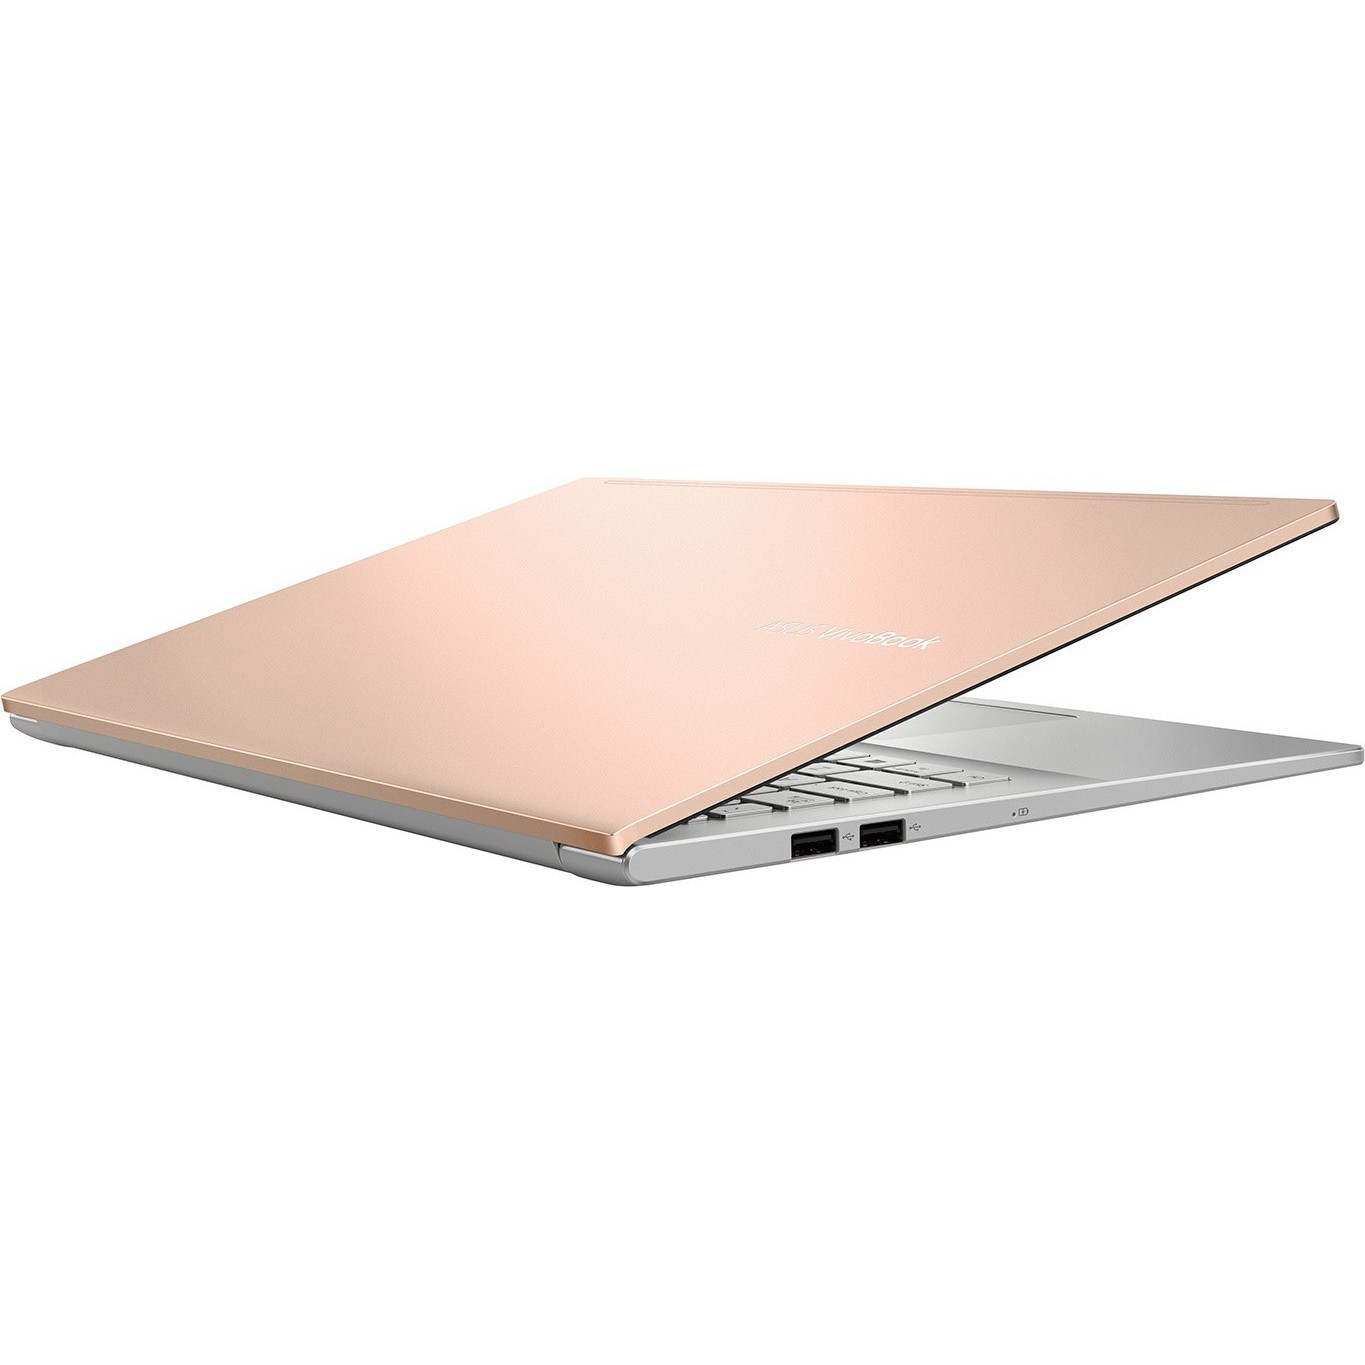 Ноутбук Asus Vivobook 15 K513ea Bq984 Купить